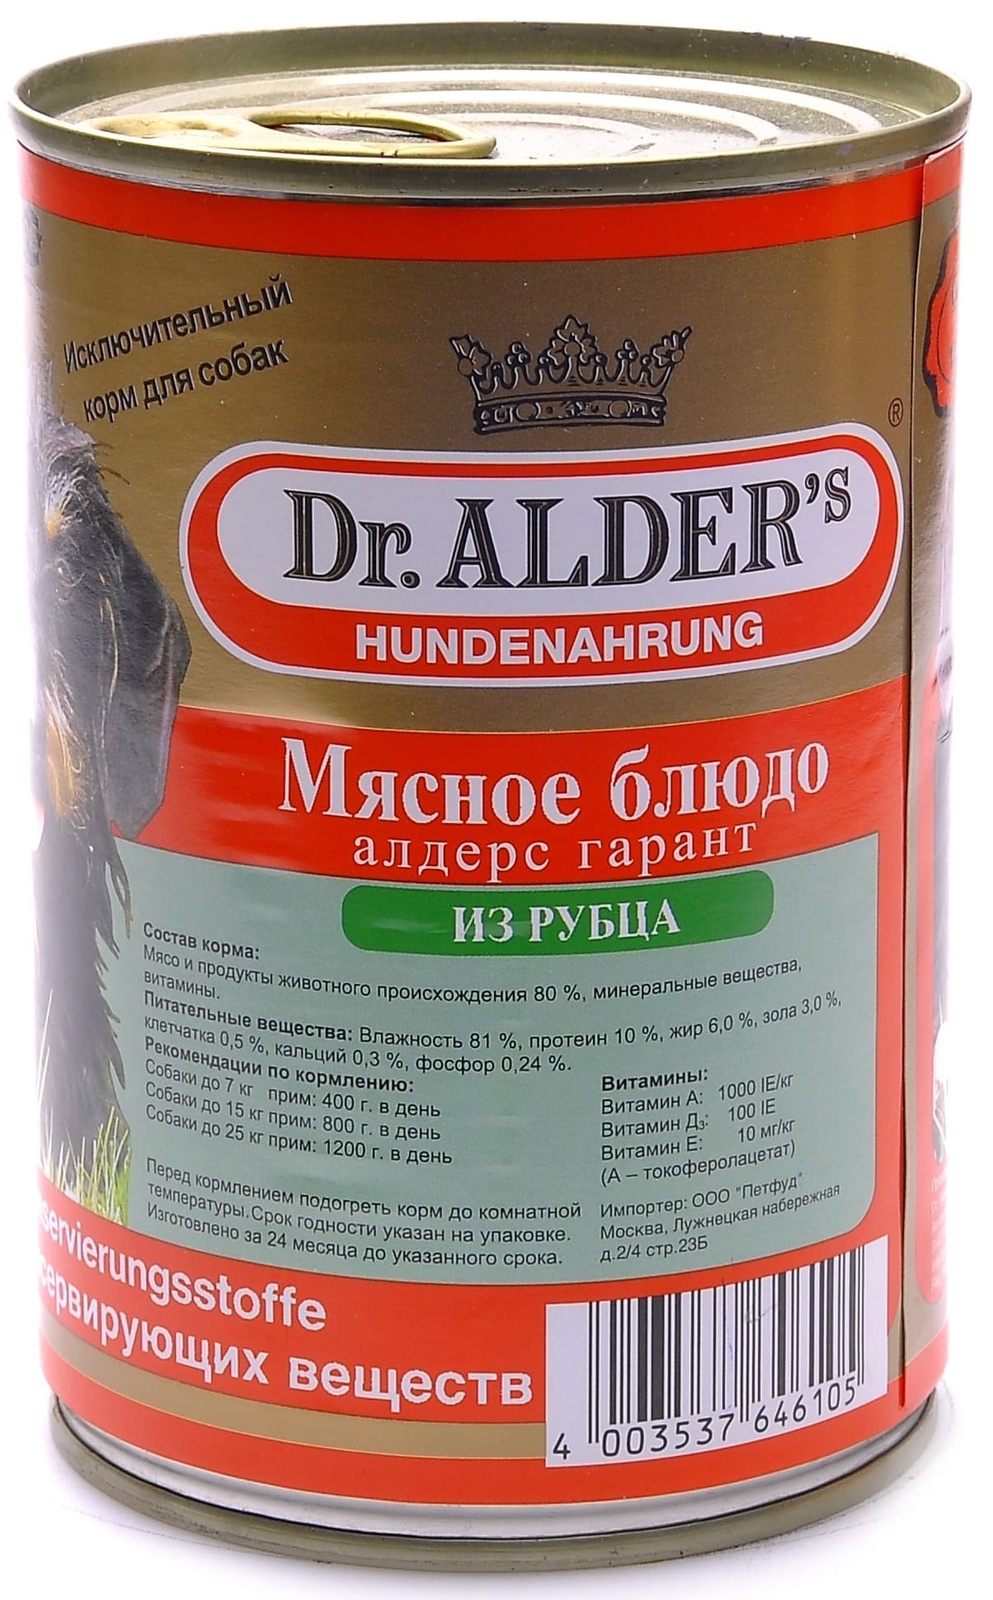 Доктор Алдерс консервы для собак с рубцом (410 г)